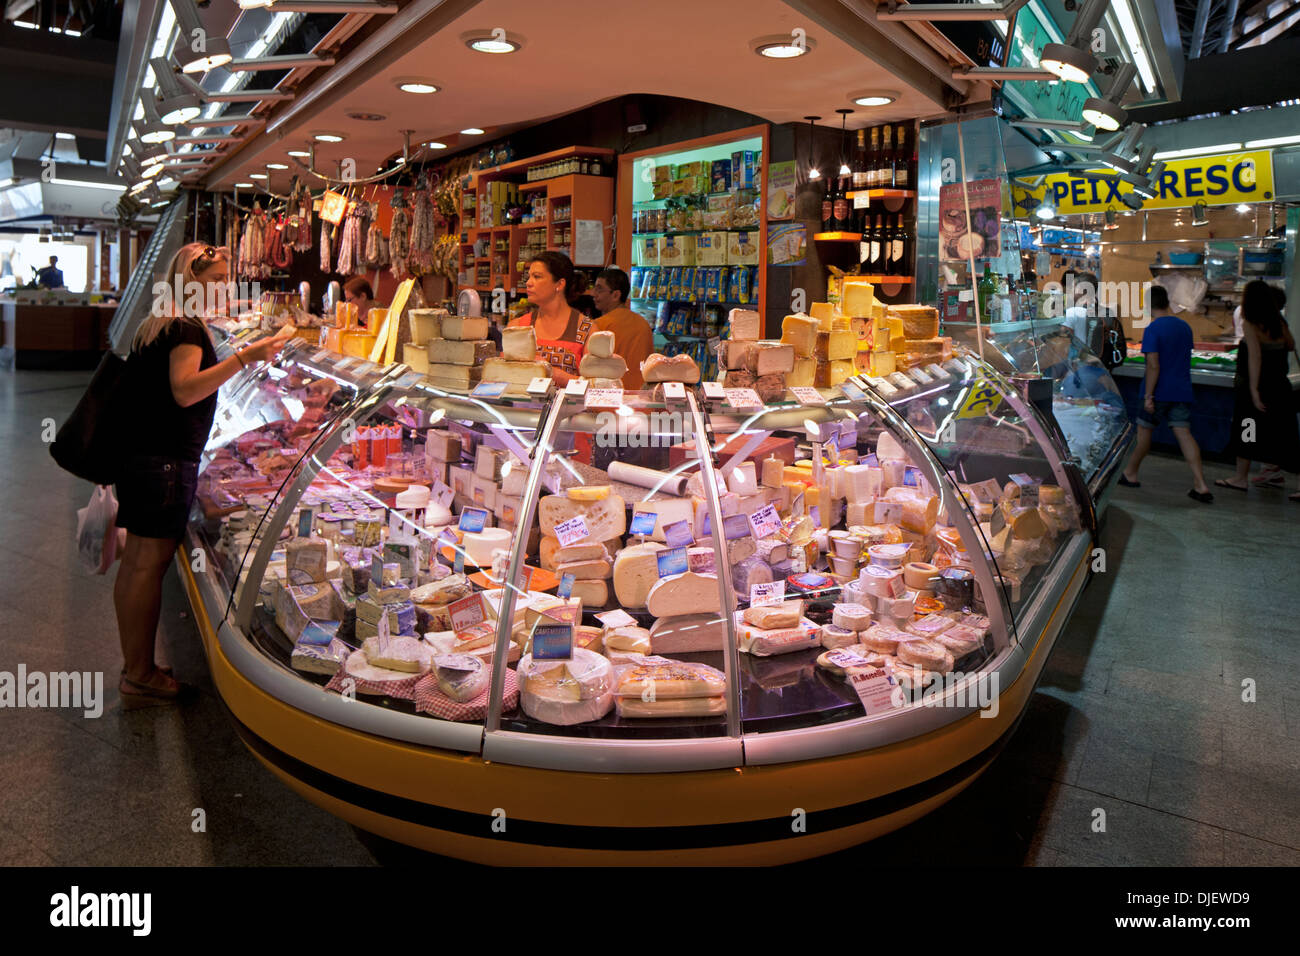 Cheese stall, Santa Caterina food market, Barcelona, Spain Stock Photo